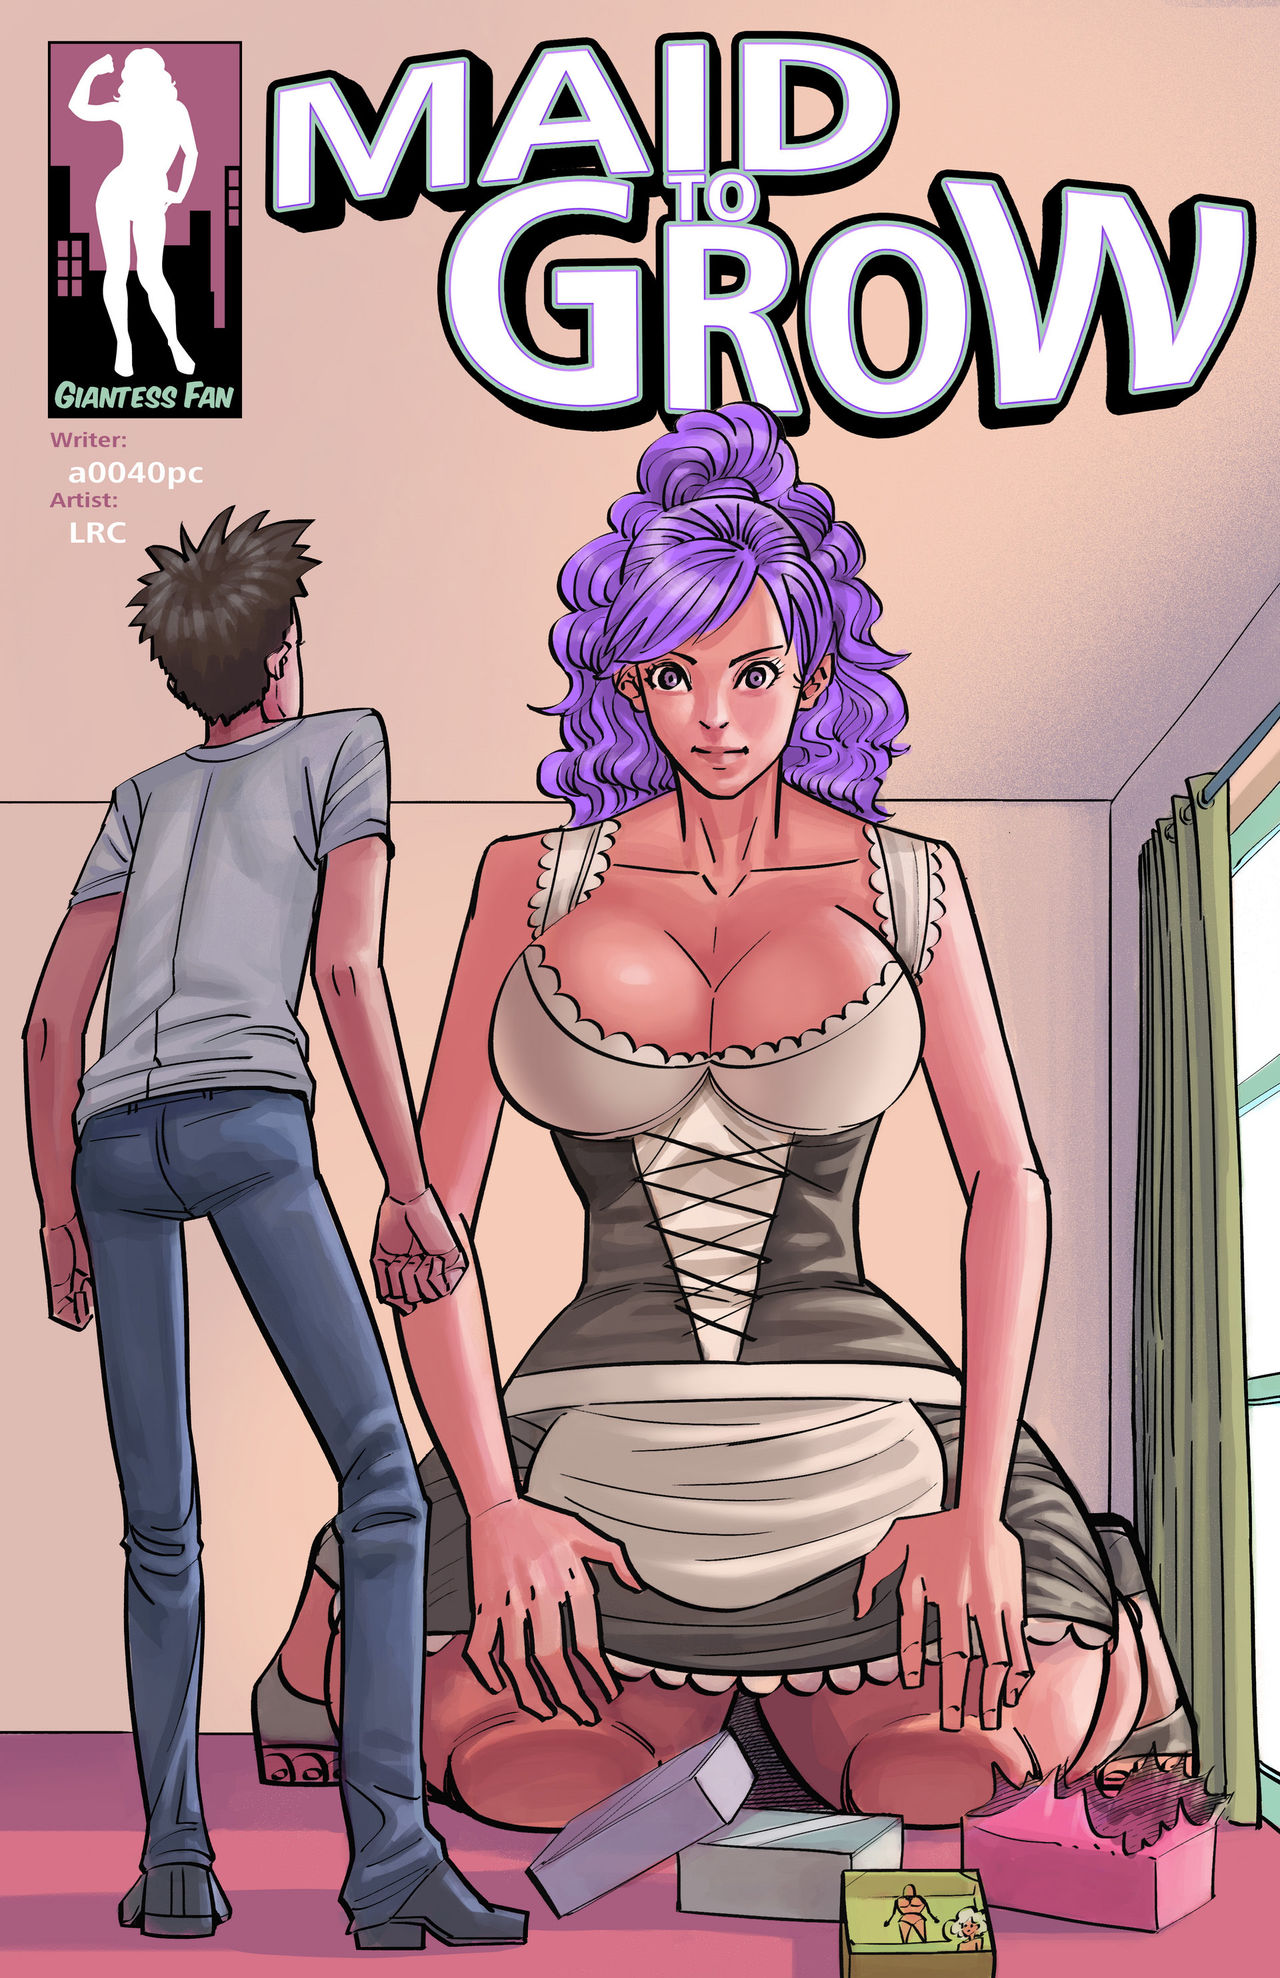 Giantess Fan] - Maid To Grow â€¢ Free Porn Comics